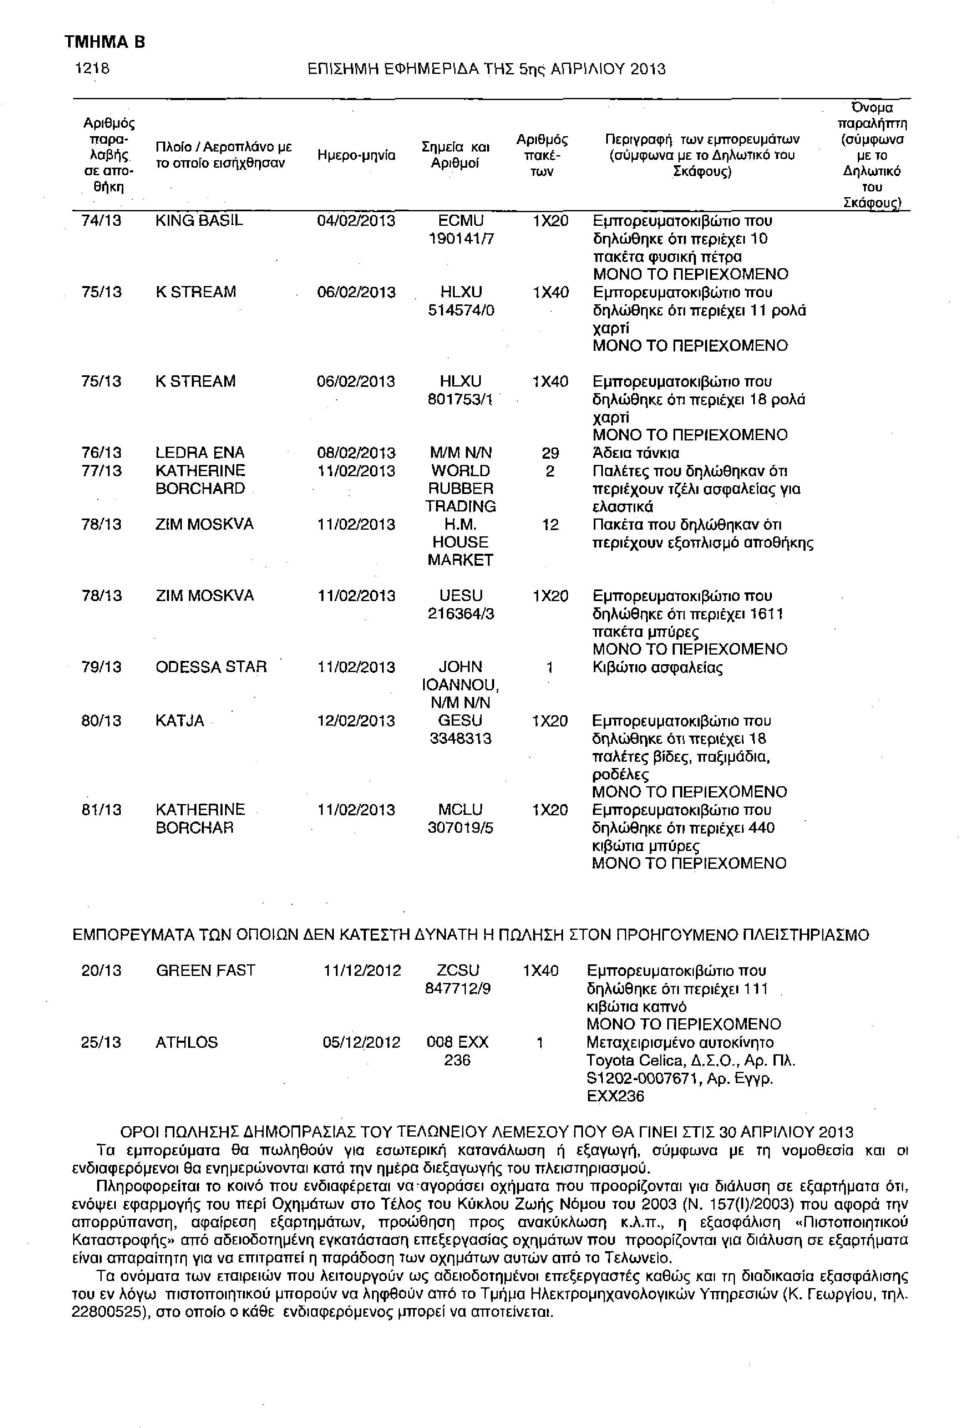 ΠΕΡΙΕΧΟΜΕΝΟ Εμπορευματοκιβώτιο που δηλώθηκε ότι περιέχει 11 ρολά χαρτί ΜΟΝΟ ΤΟ ΠΕΡΙΕΧΟΜΕΝΟ Όνομα παραλήπτη (σύμφωνα με το Δηλωτικό του Σκάφους) 75/13 Κ STREAM 06/02/2013 HLXU 801753/1 1X40 76/13